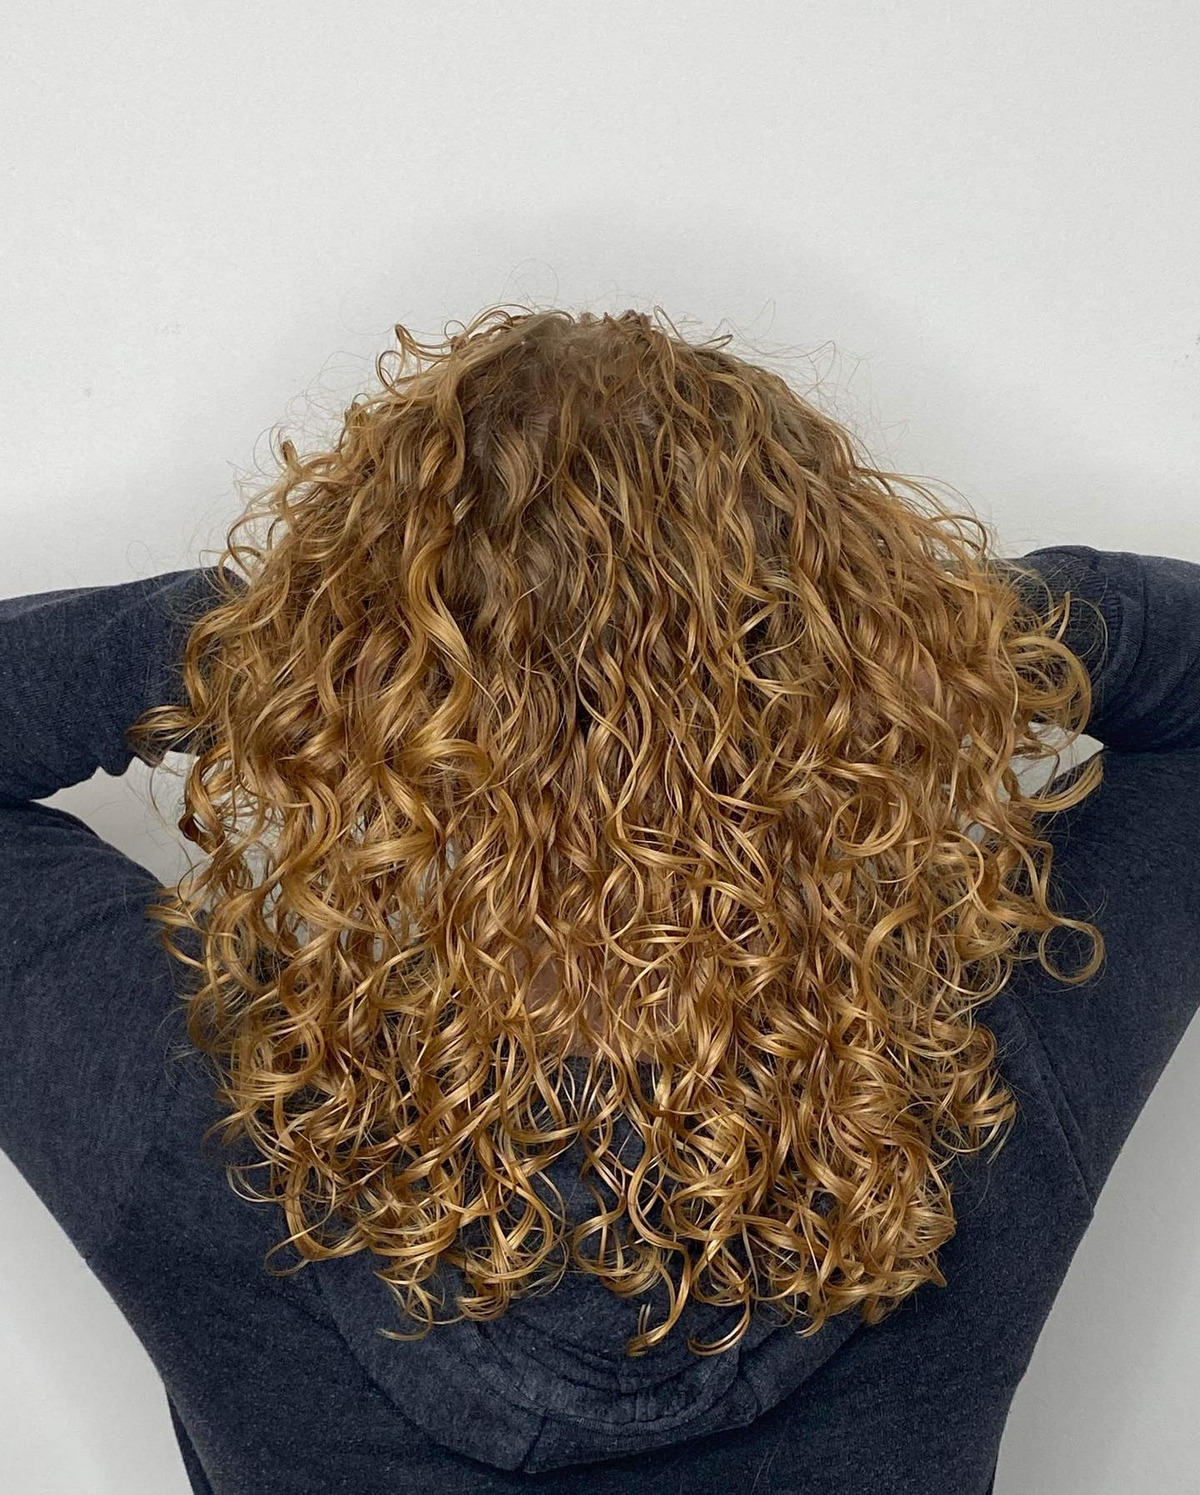 Warm Golden Blonde Curly Hair